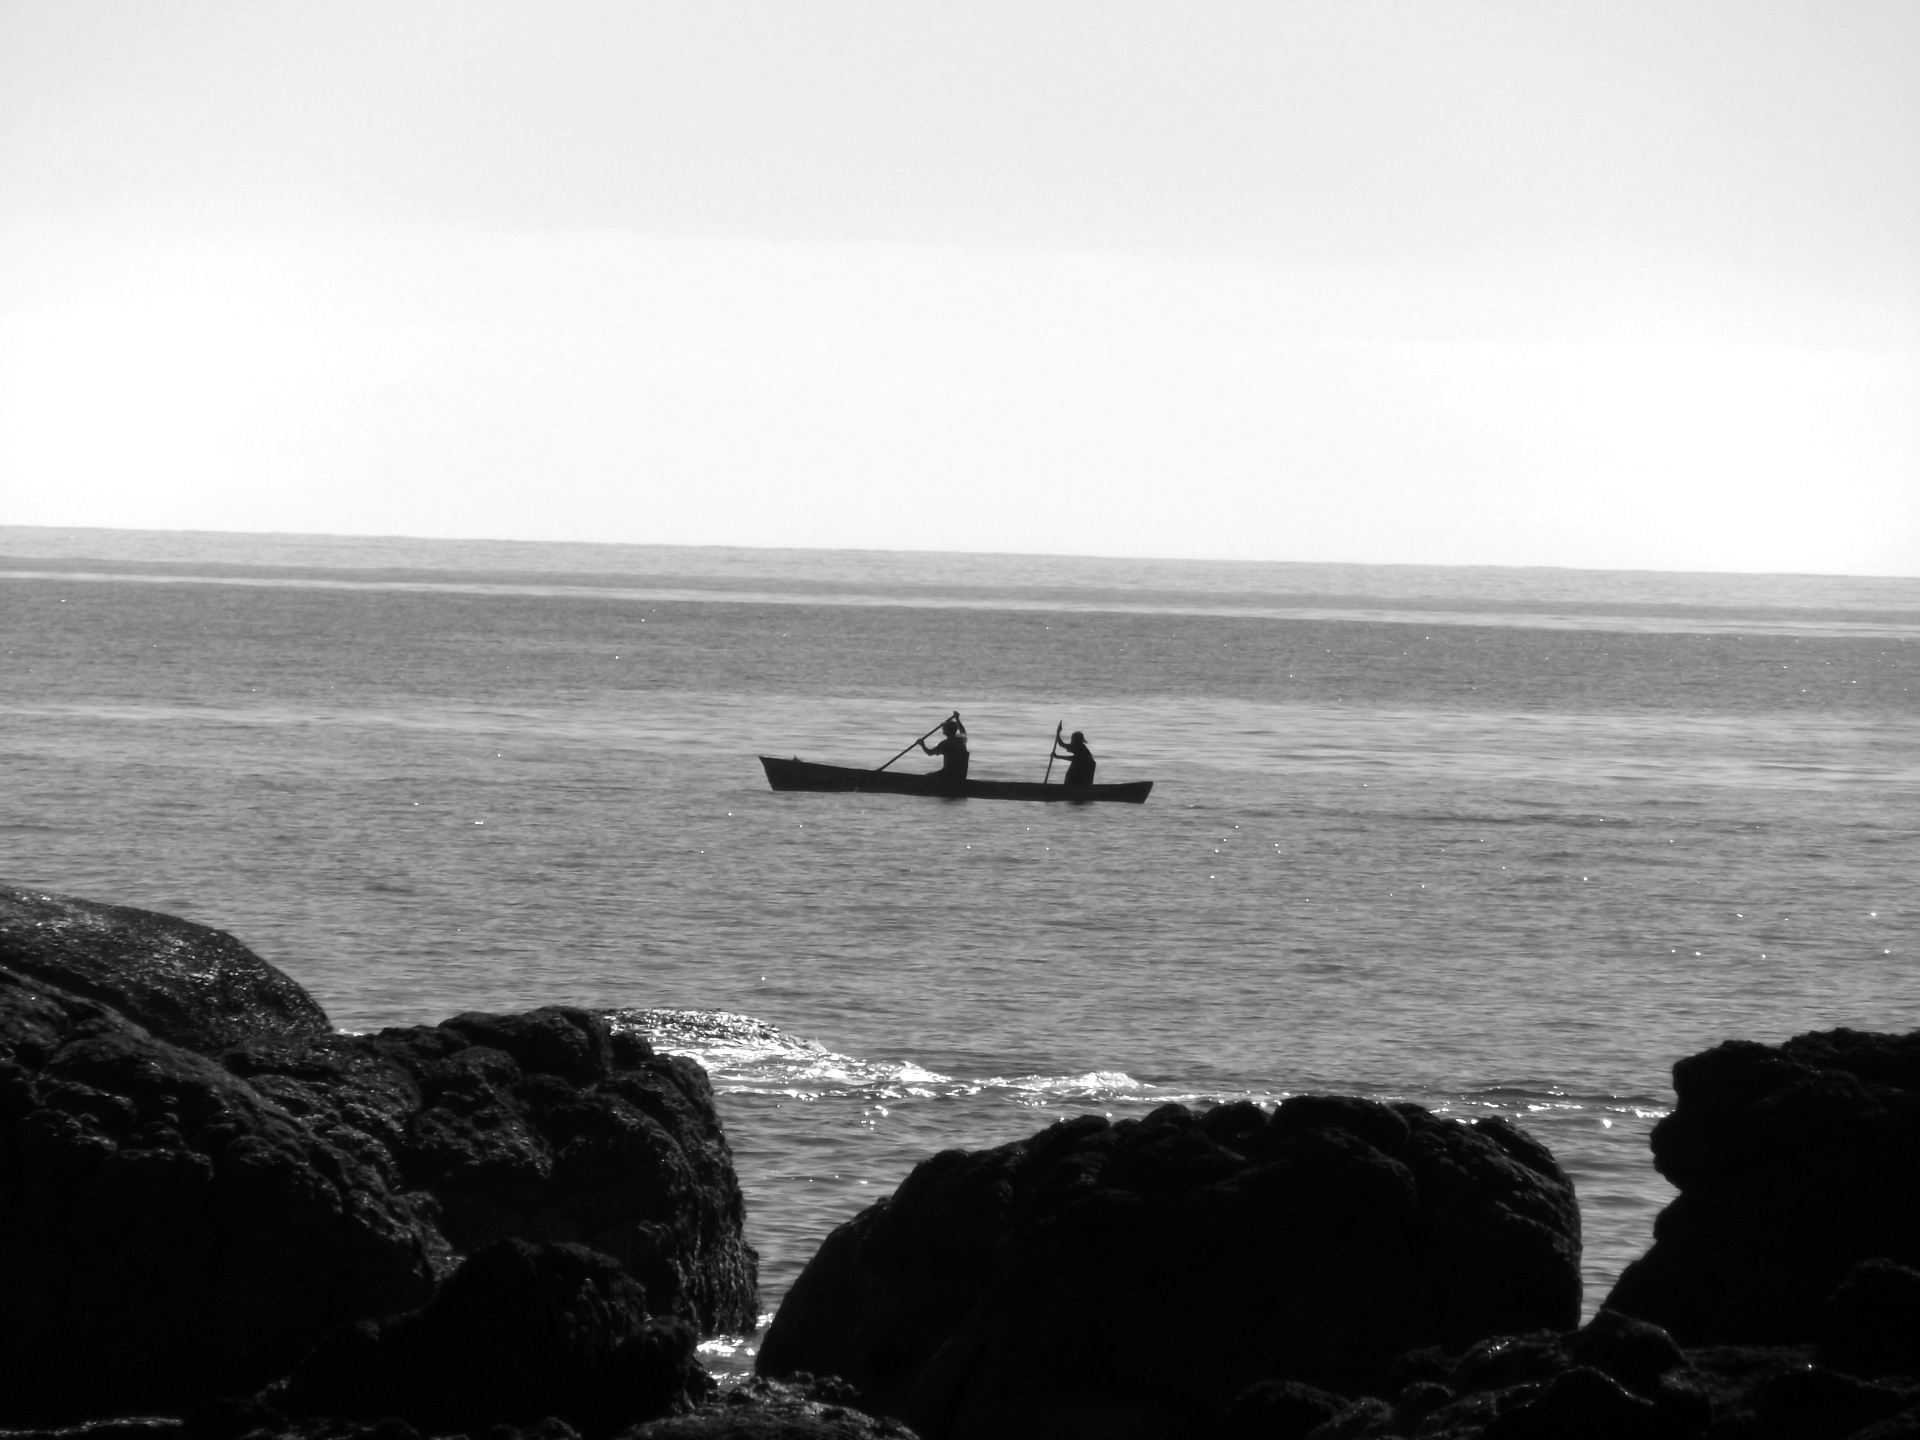 No terço superior o céu está limpo. Ao centro vê-se a silhueta de duas pessoas remando uma canoa no mar. A água está calma, com poucas ondas. No terço inferior há uma formação rochosa.